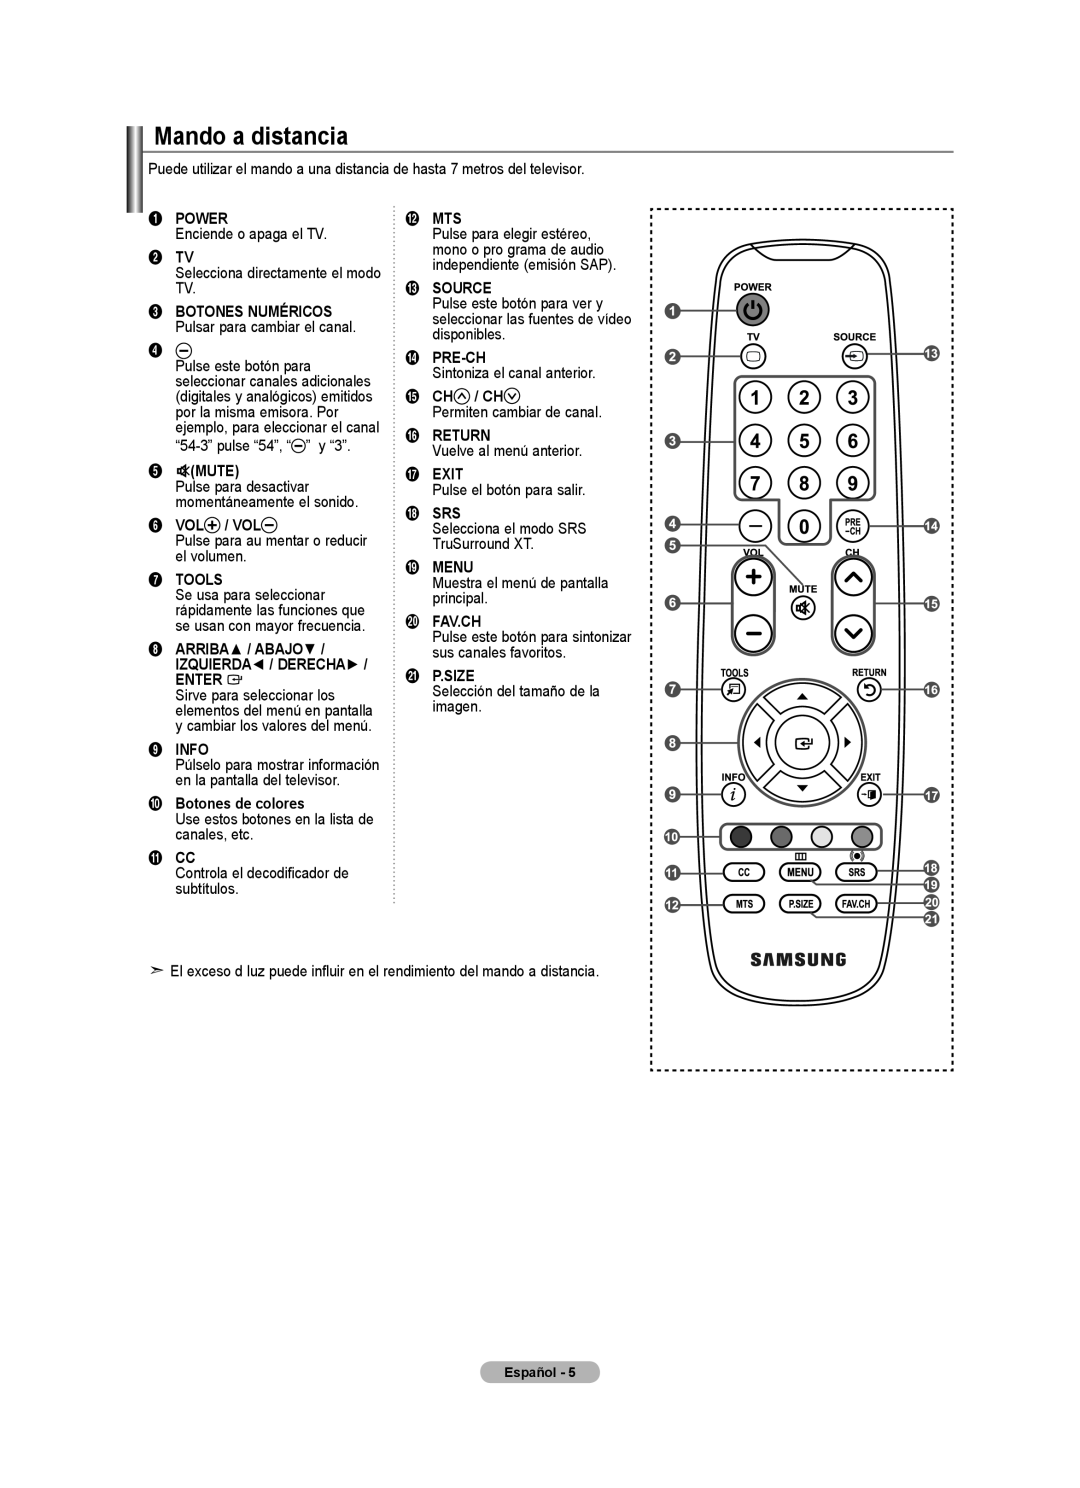 Samsung Series L3 Mando a distancia, Power, 2 TV, Mute, Vol / Vol, Tools, Enter, Info, Botones de colores, @ Mts, # Source 